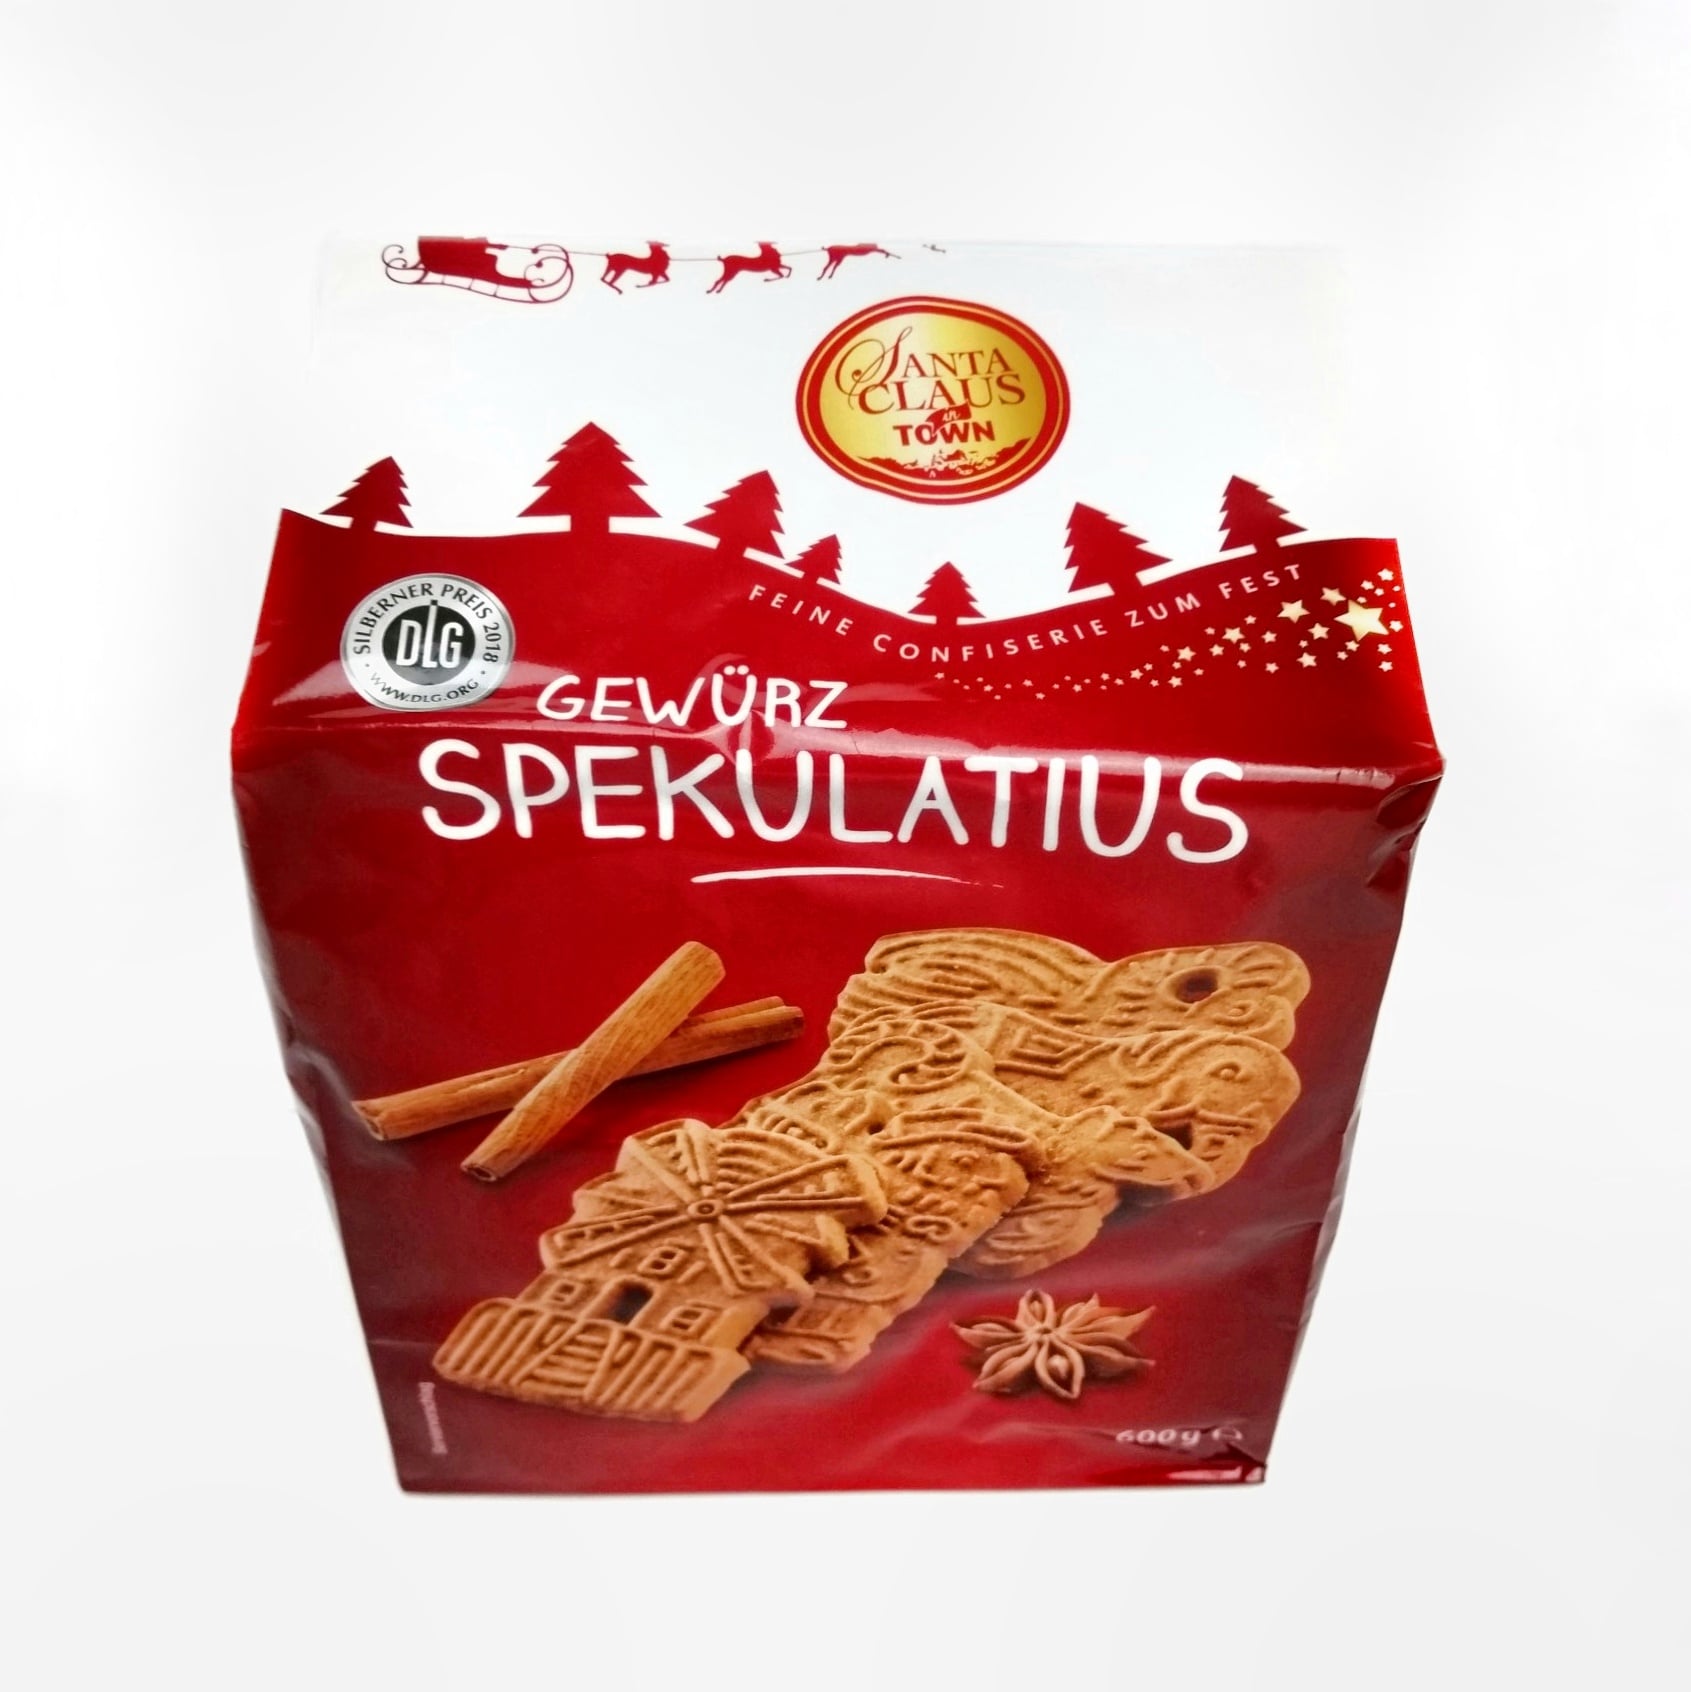 Santa Claus in Town Gewürz-Spekulatius - vegane Süßigkeiten und Snacks ...